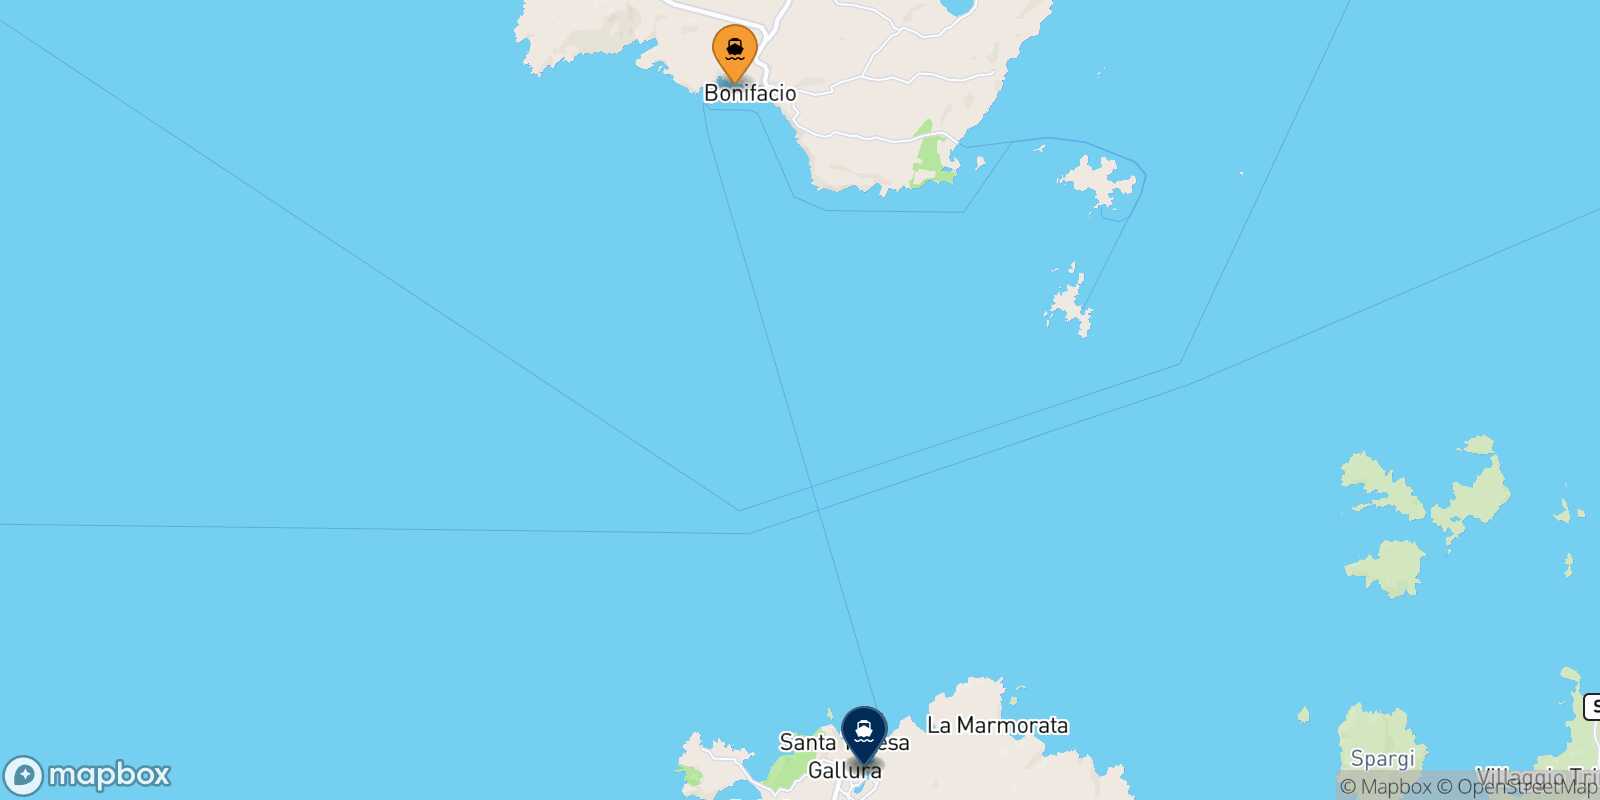 Mappa delle destinazioni raggiungibili da Bonifacio